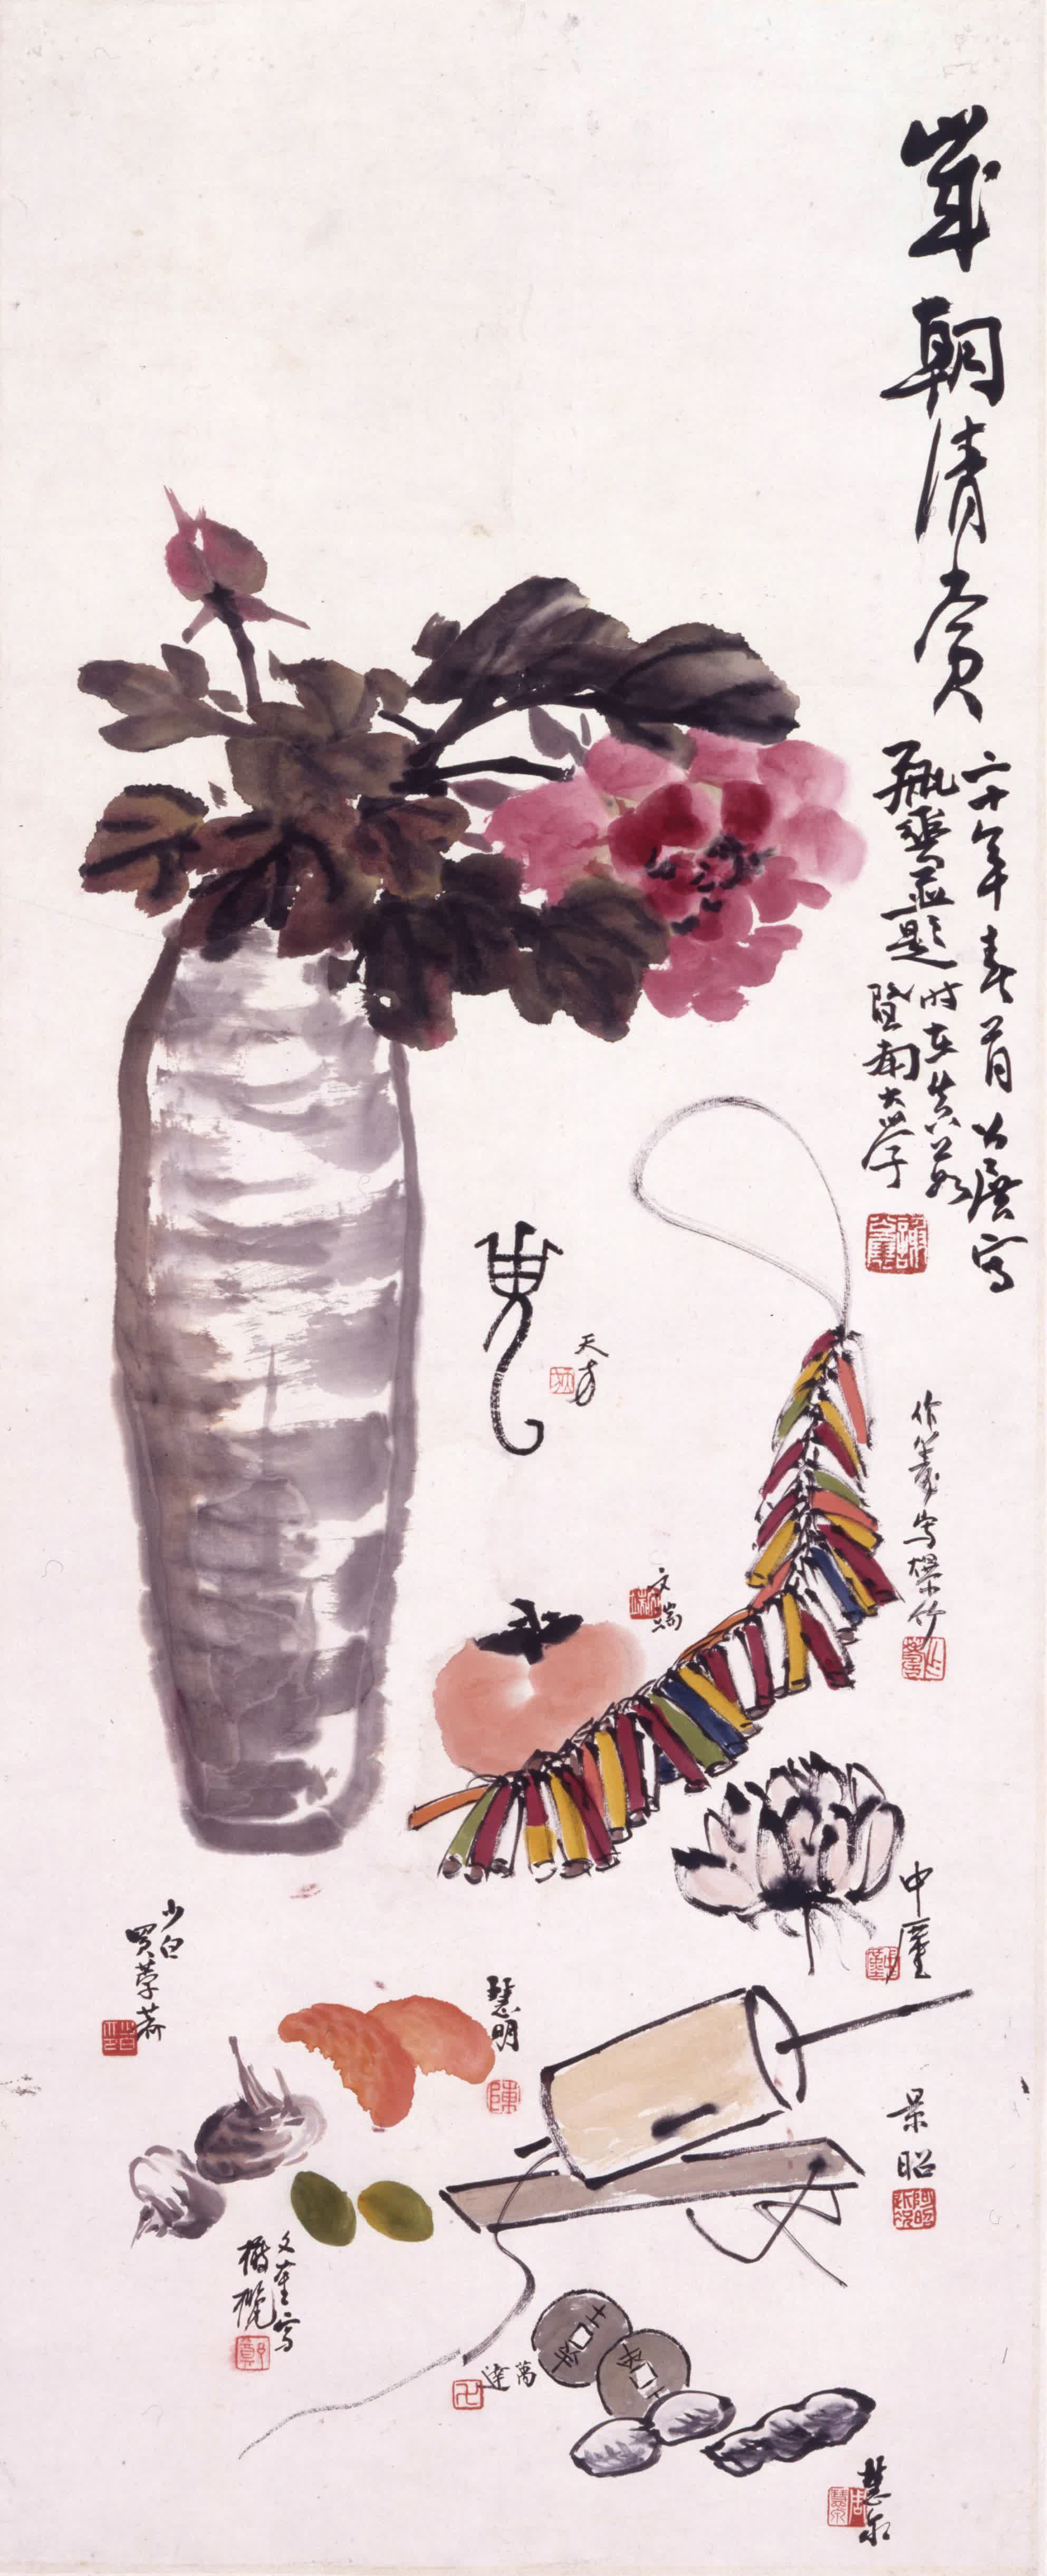 圖示謝公展（1885 - 1940）與學生劉作籌（1911 - 1993）等的合作畫《歲朝清賞圖》。